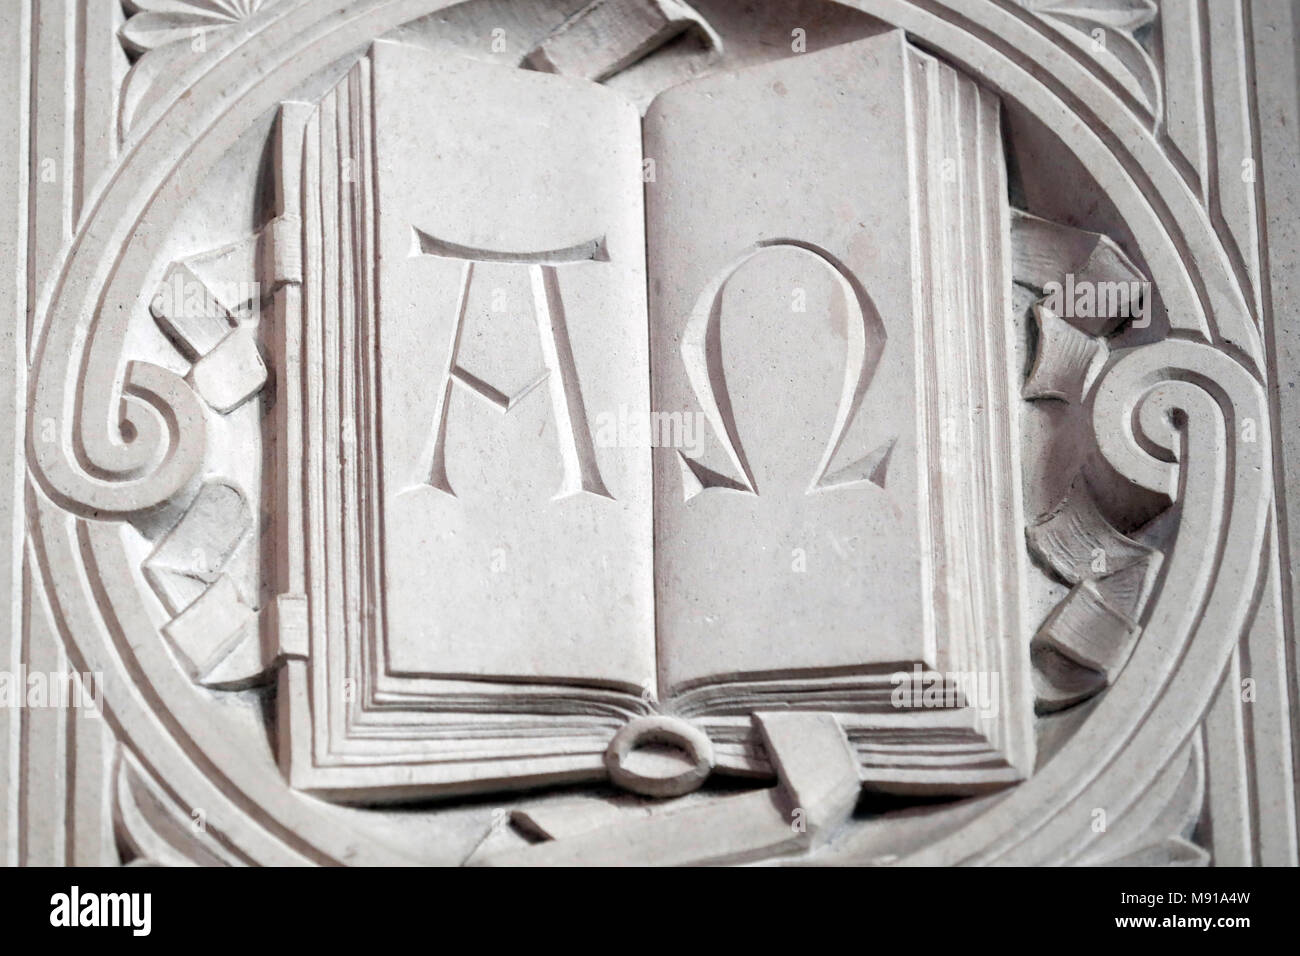 El Templo Neuf iglesia protestante. Las letras griegas alfa y omega como símbolos cristianos. Estrasburgo. Francia. Foto de stock